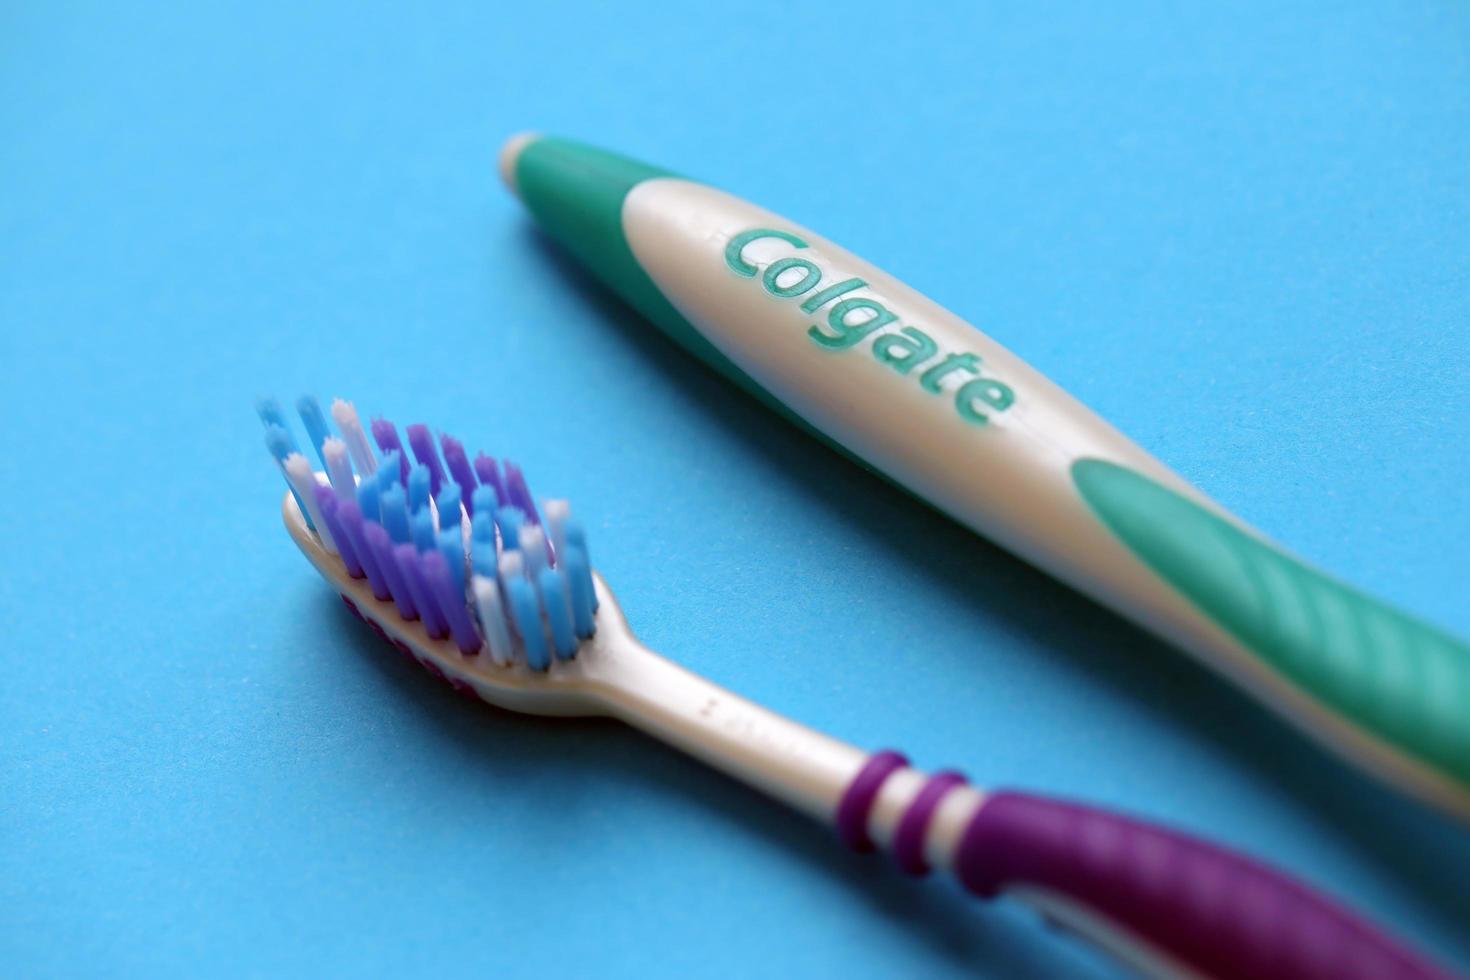 ternopil, ucrânia - 23 de junho de 2022 escovas de dentes colgate, uma marca de produtos de higiene bucal fabricados pela empresa americana de bens de consumo colgate-palmolive foto